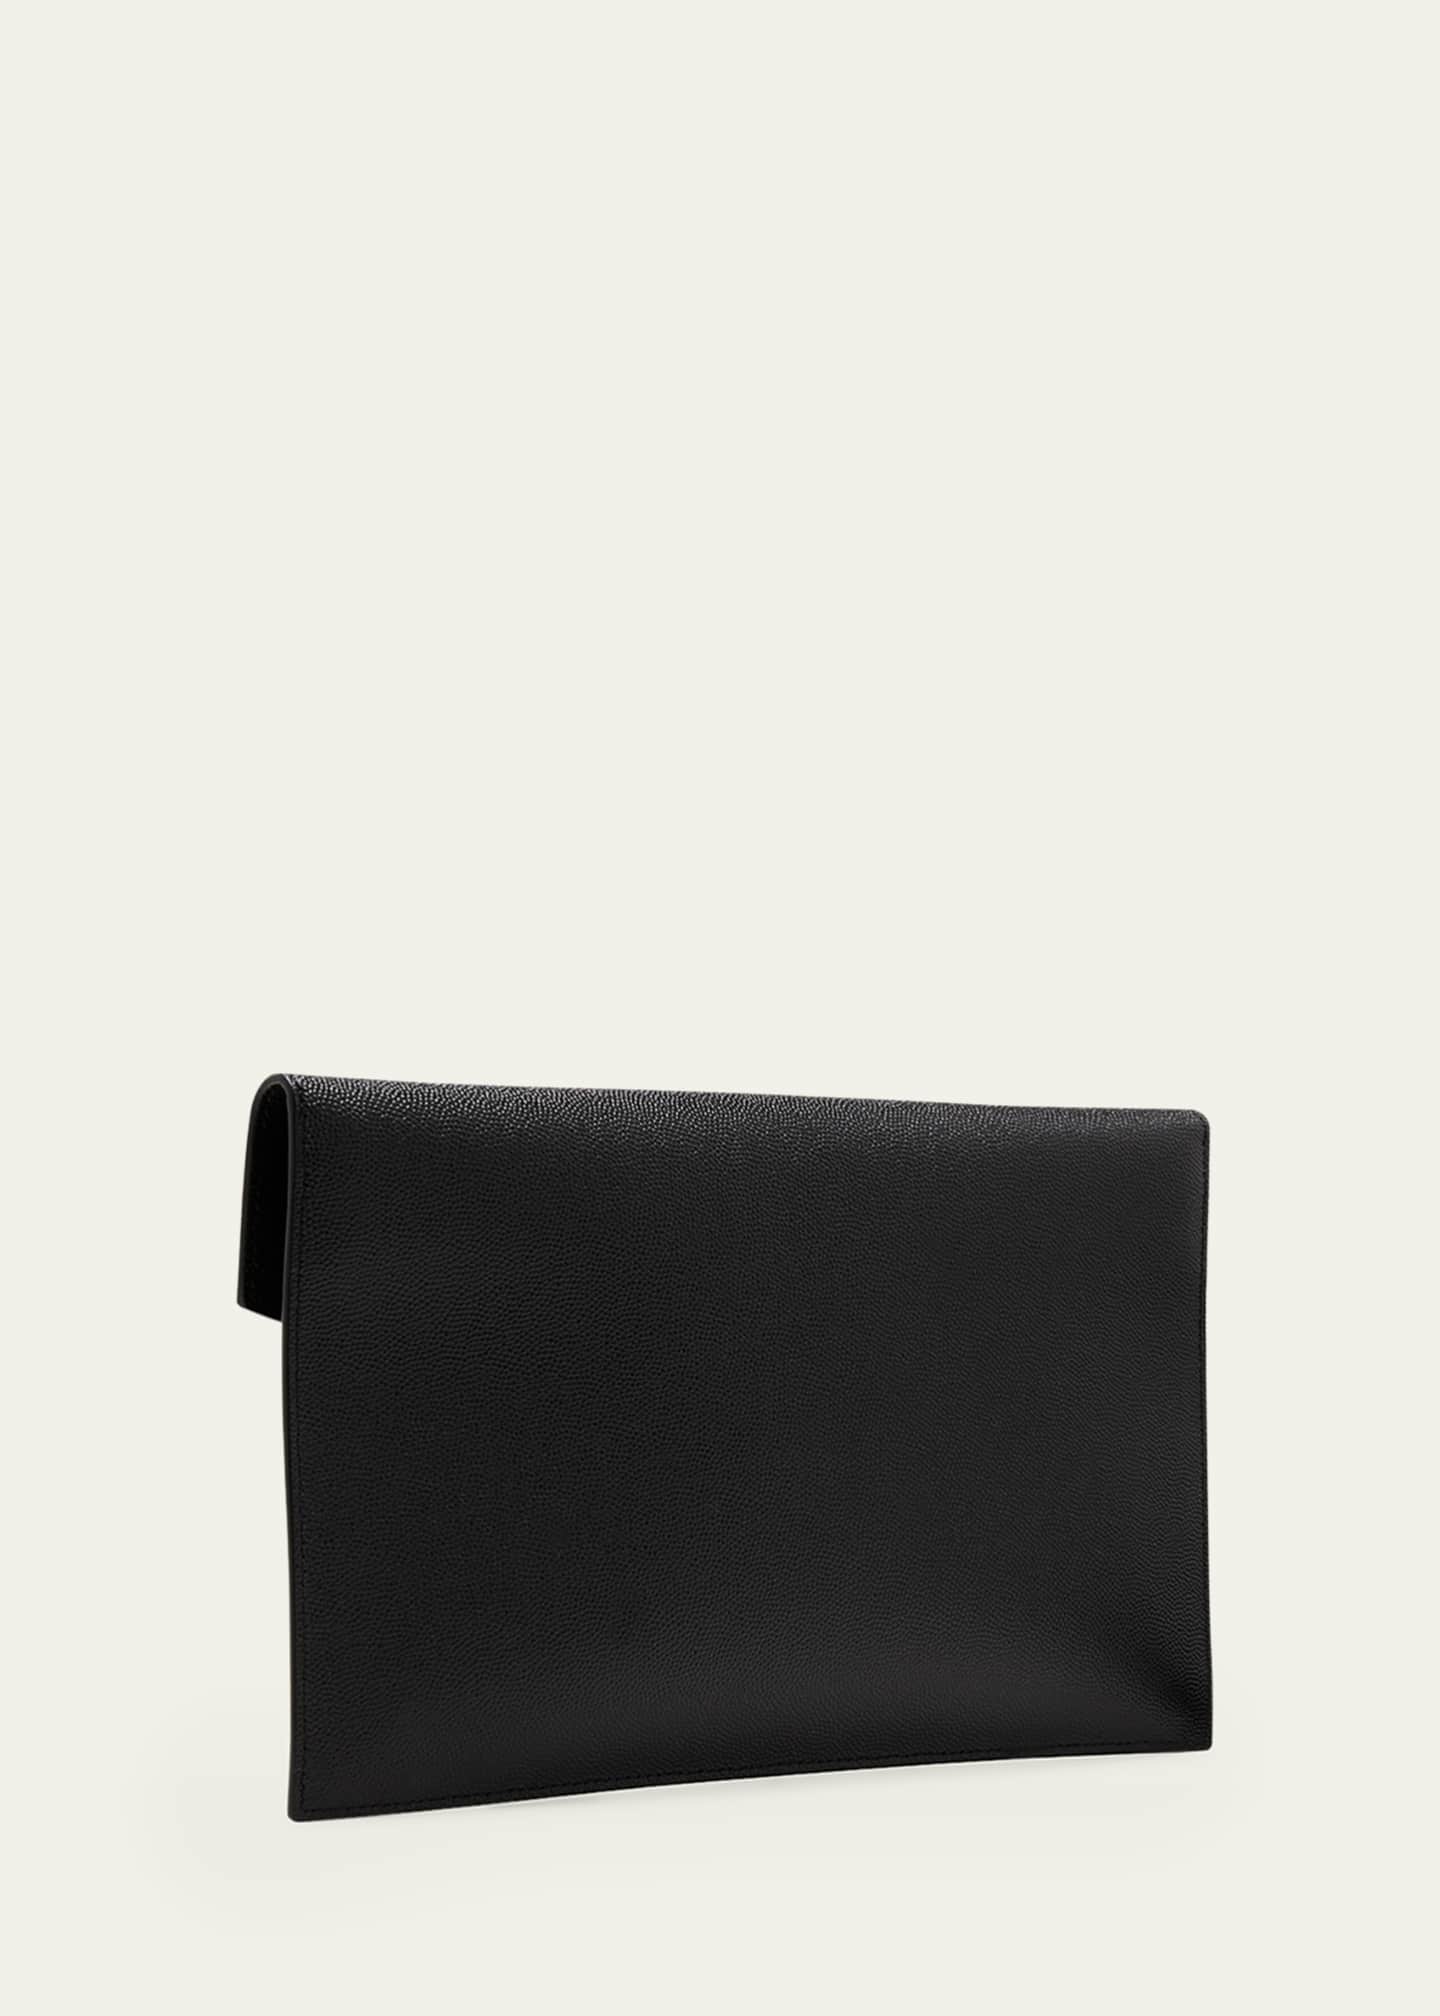 Saint Laurent Uptown Envelope Leather Clutch Bag - Farfetch